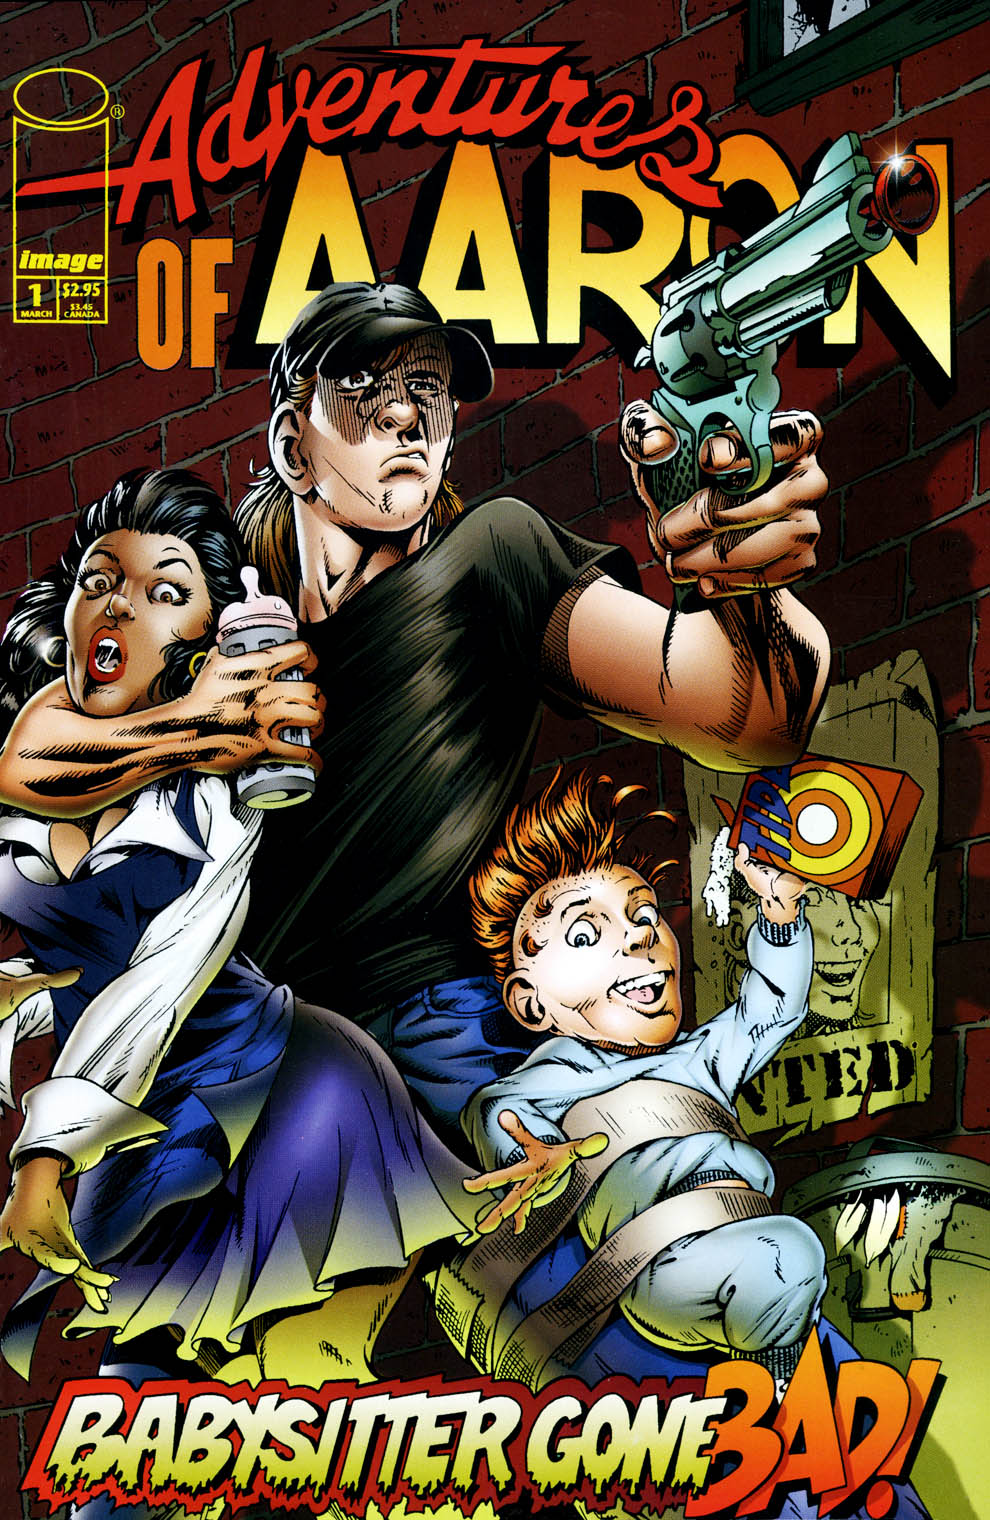 Read online Adventures of Aaron comic -  Issue #1 - 1